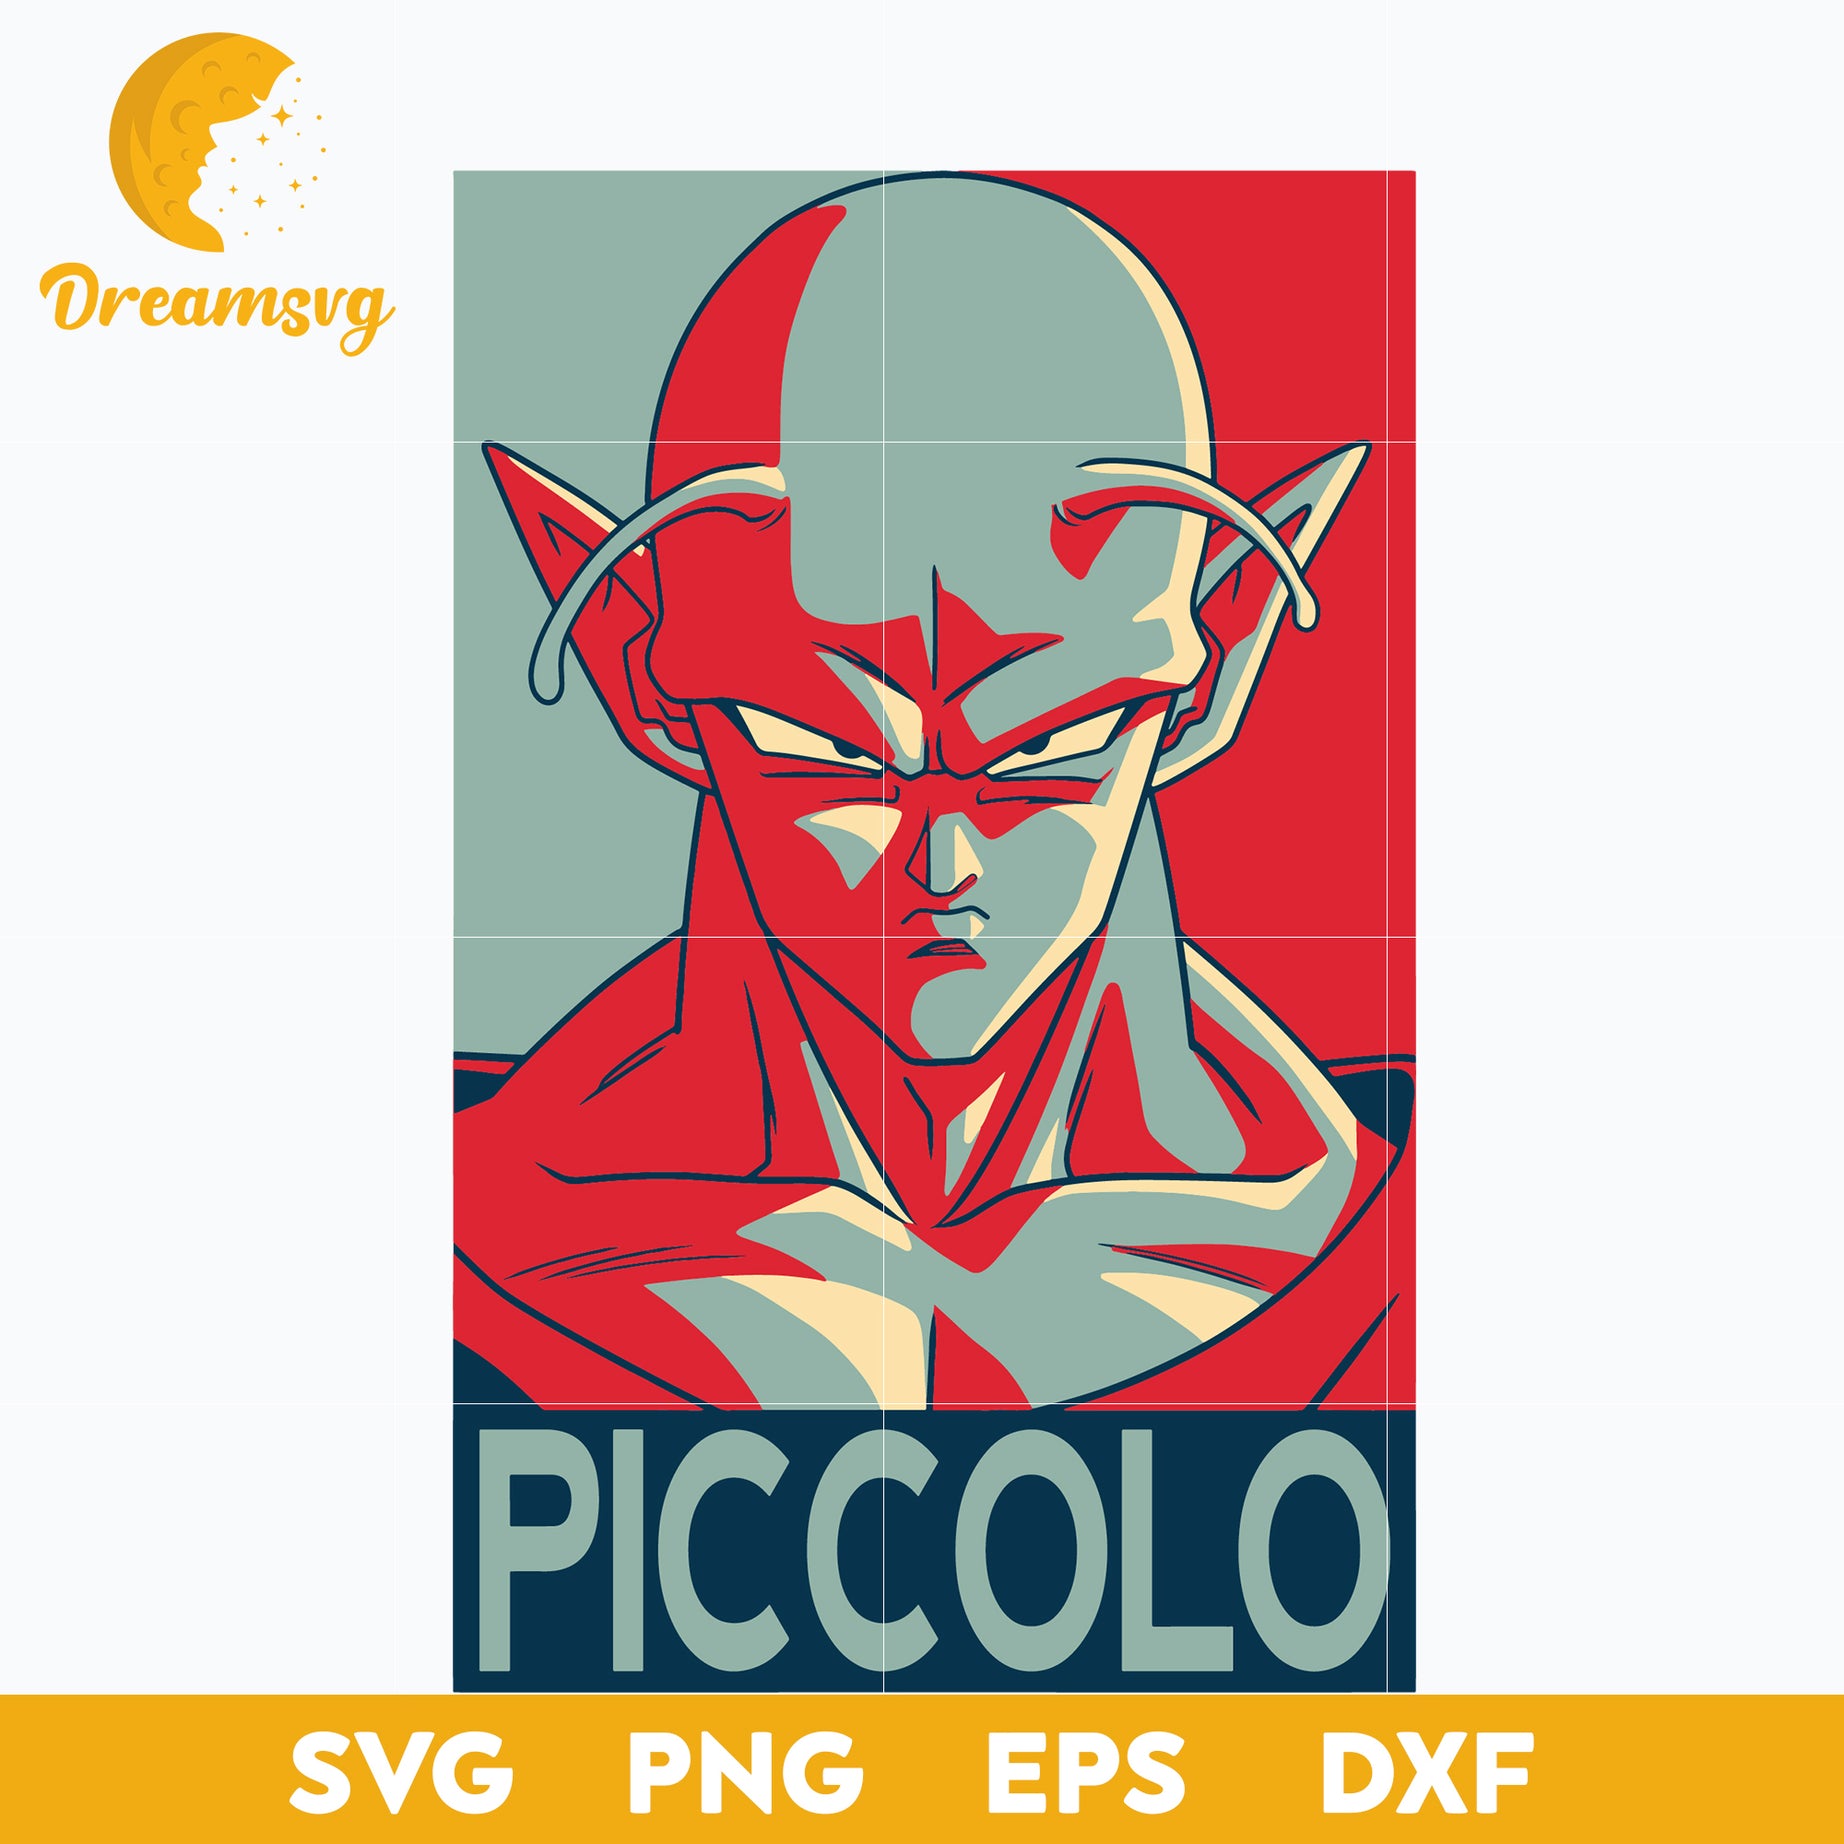 Piccolo Svg, Dragon Ball Svg, Picolo Dragon Ball Svg, Dragon Ball Anime Svg, Anime Svg, png, eps, dxf digital download.